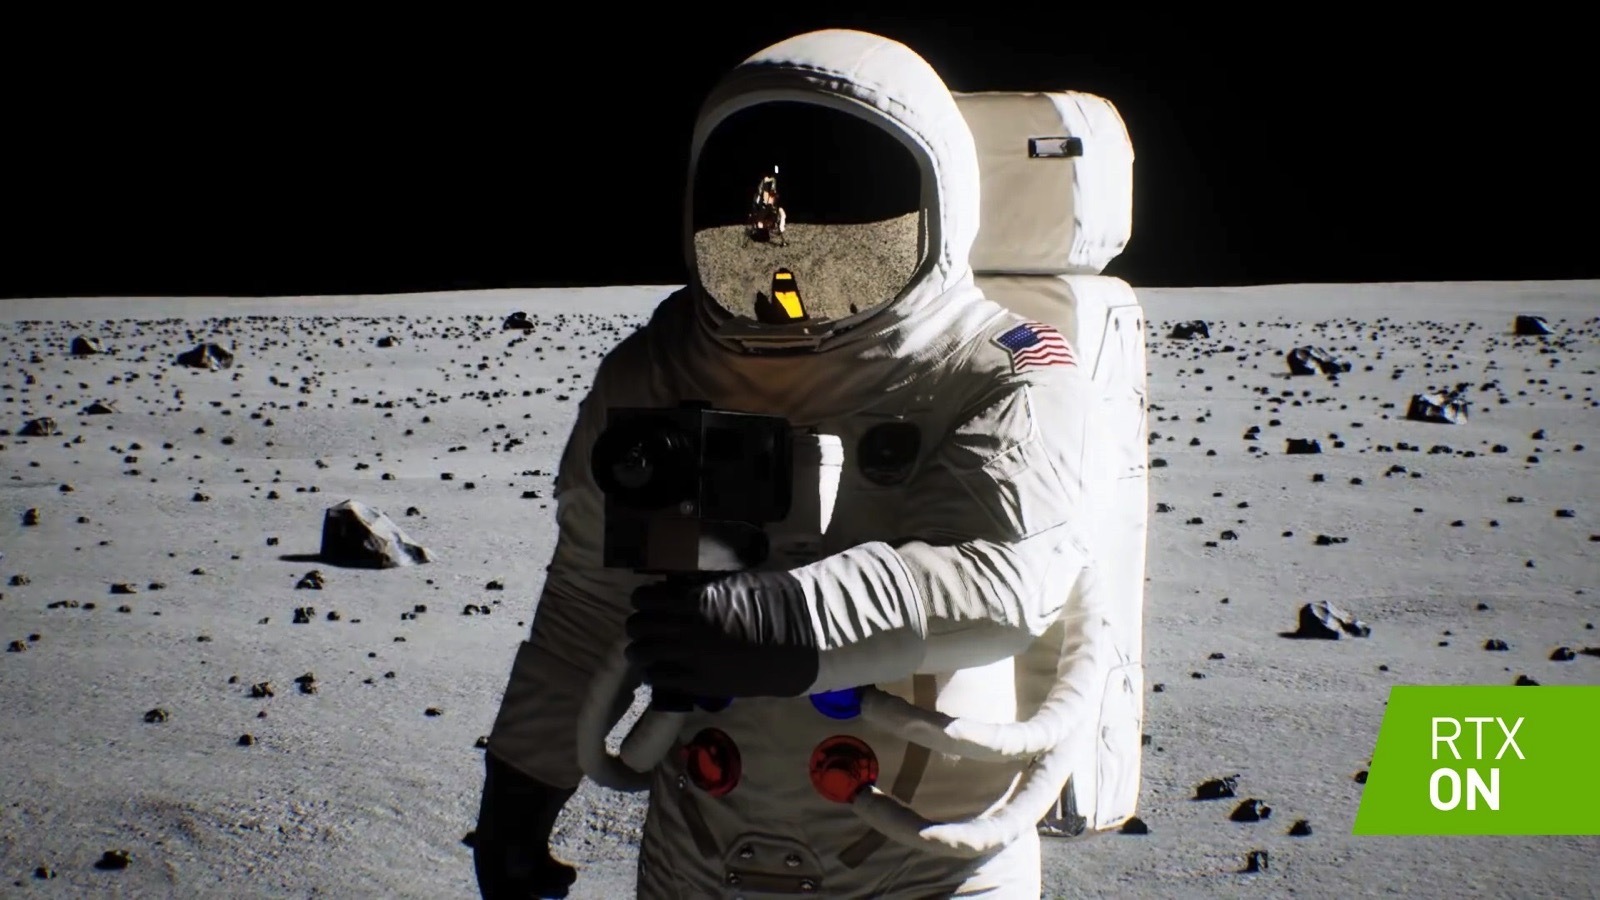 Посмотрите обновленные фотографии и видео высадки на Луну. Там идеальный свет! 37